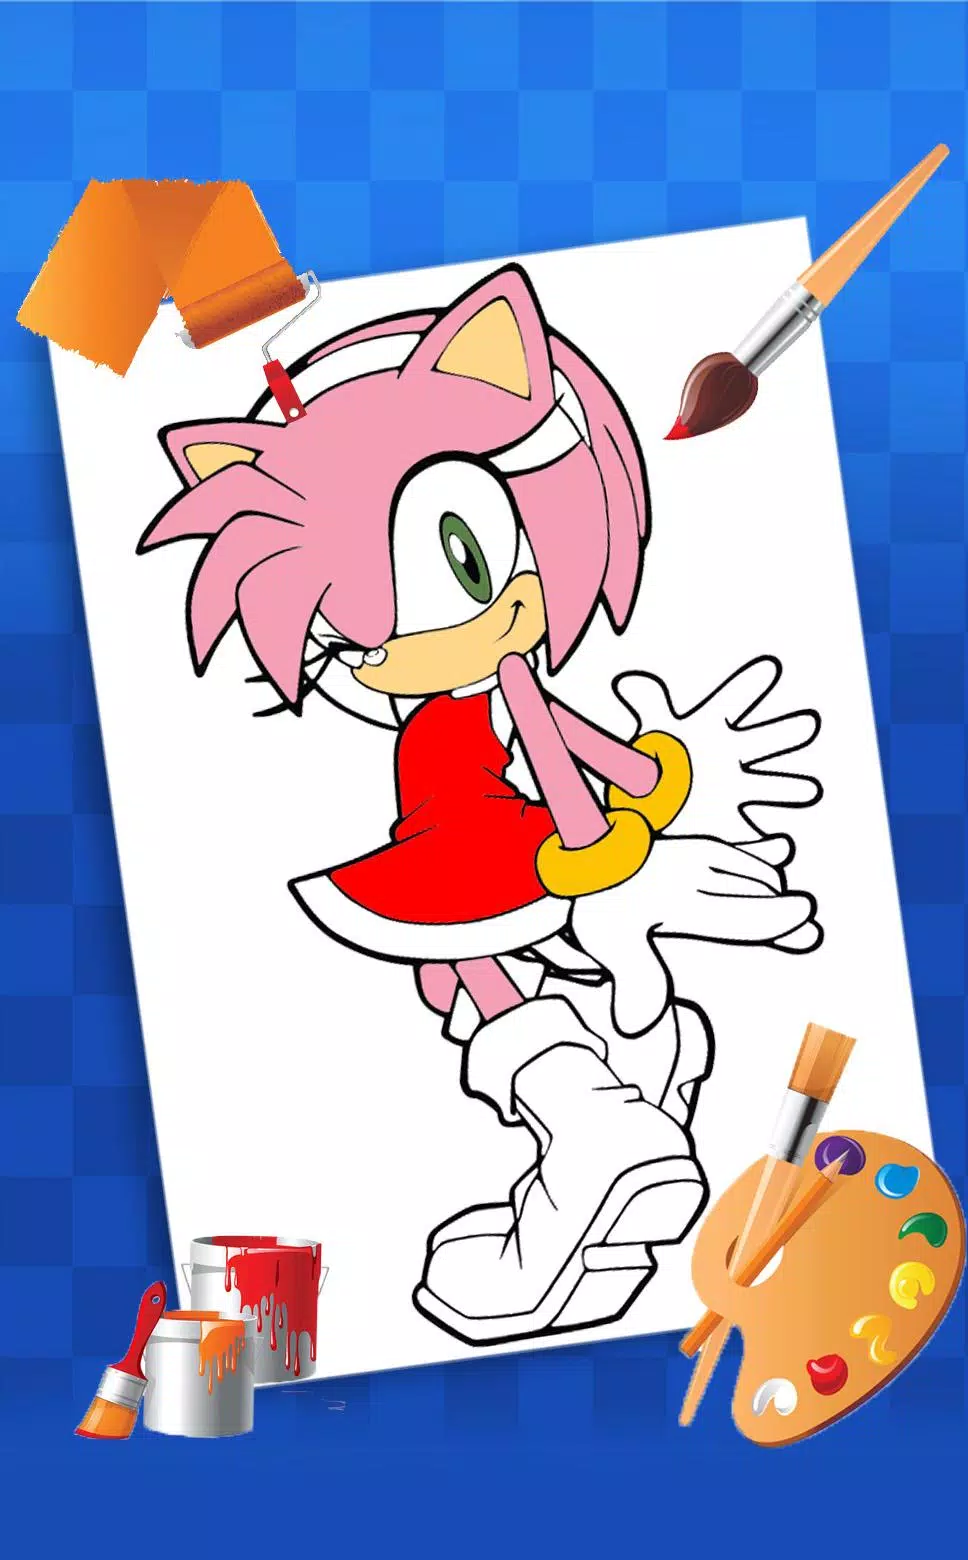 Sonic - Just Color Crianças : Páginas para colorir para crianças - Página 2